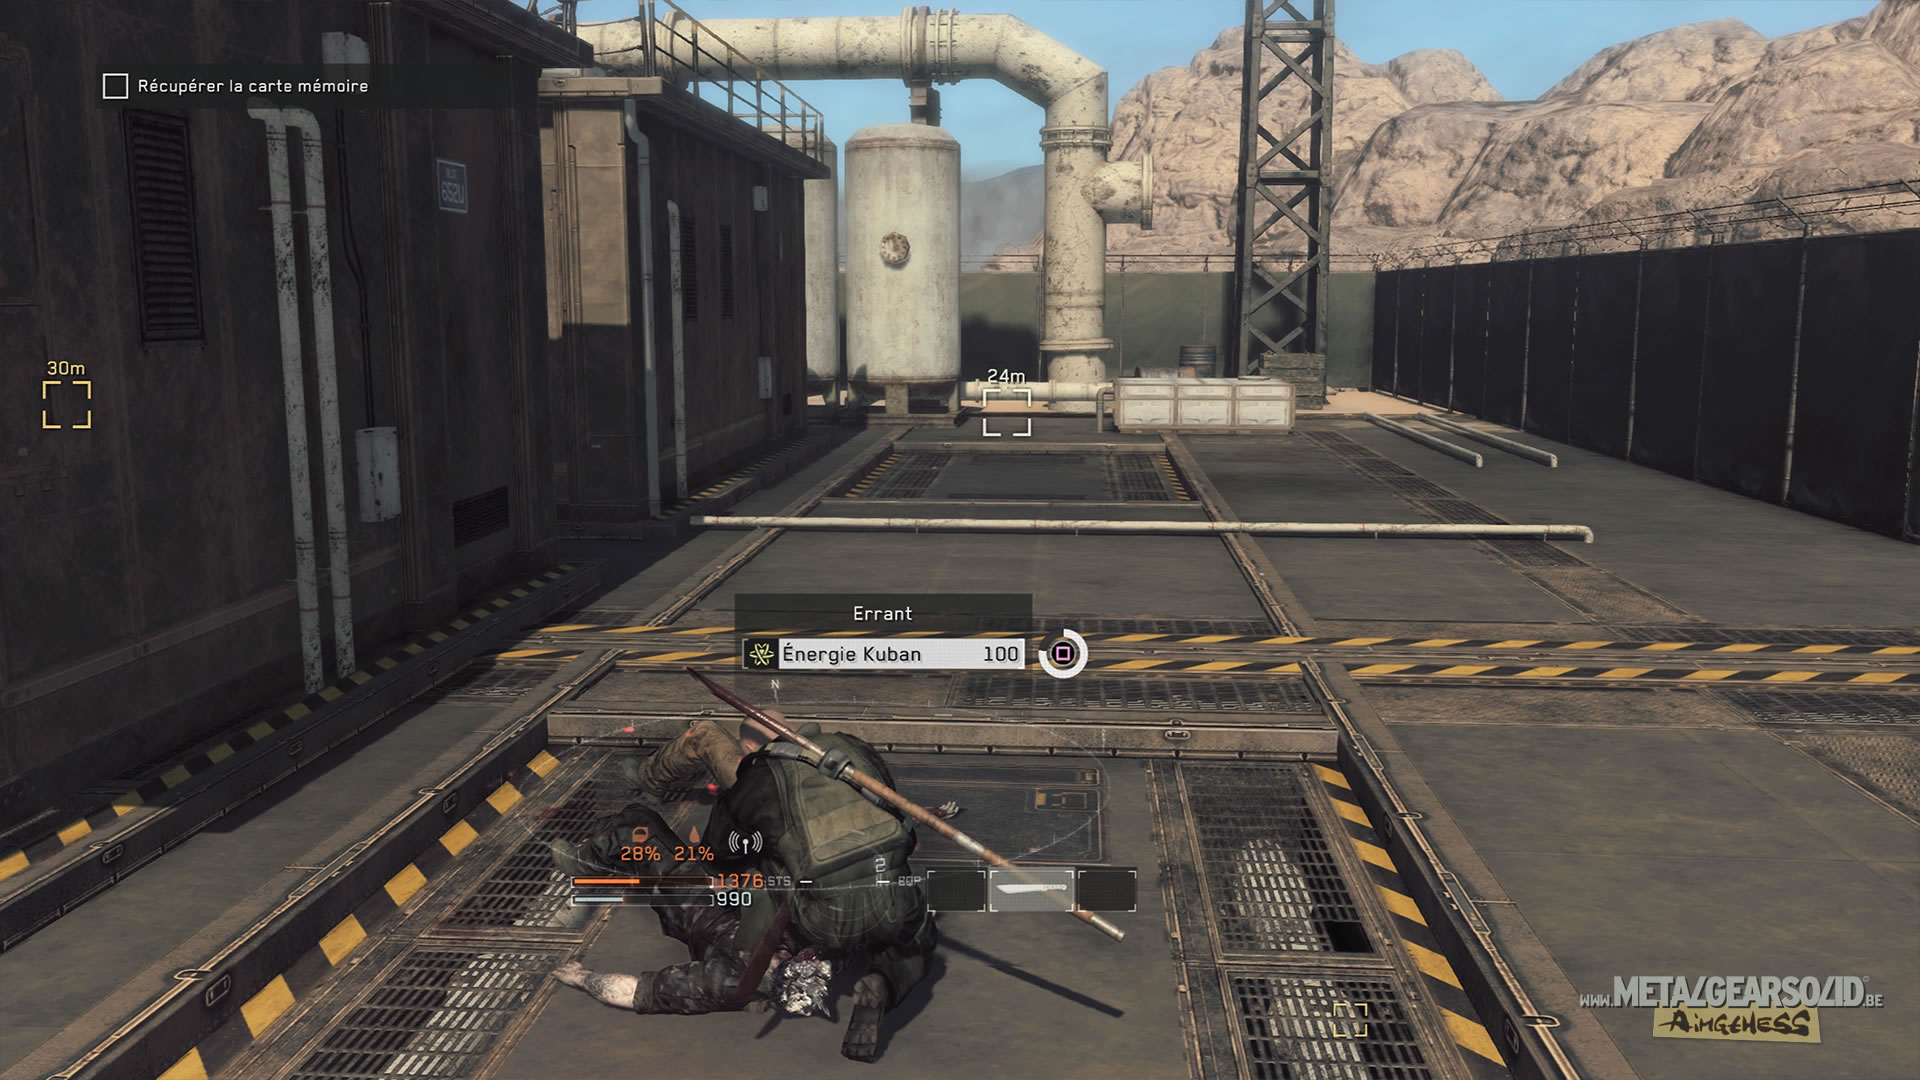 Metal Gear Survive, celui qui cachait bien son jeu : Nos impressions aprs 6 heures de jeu en mode solo